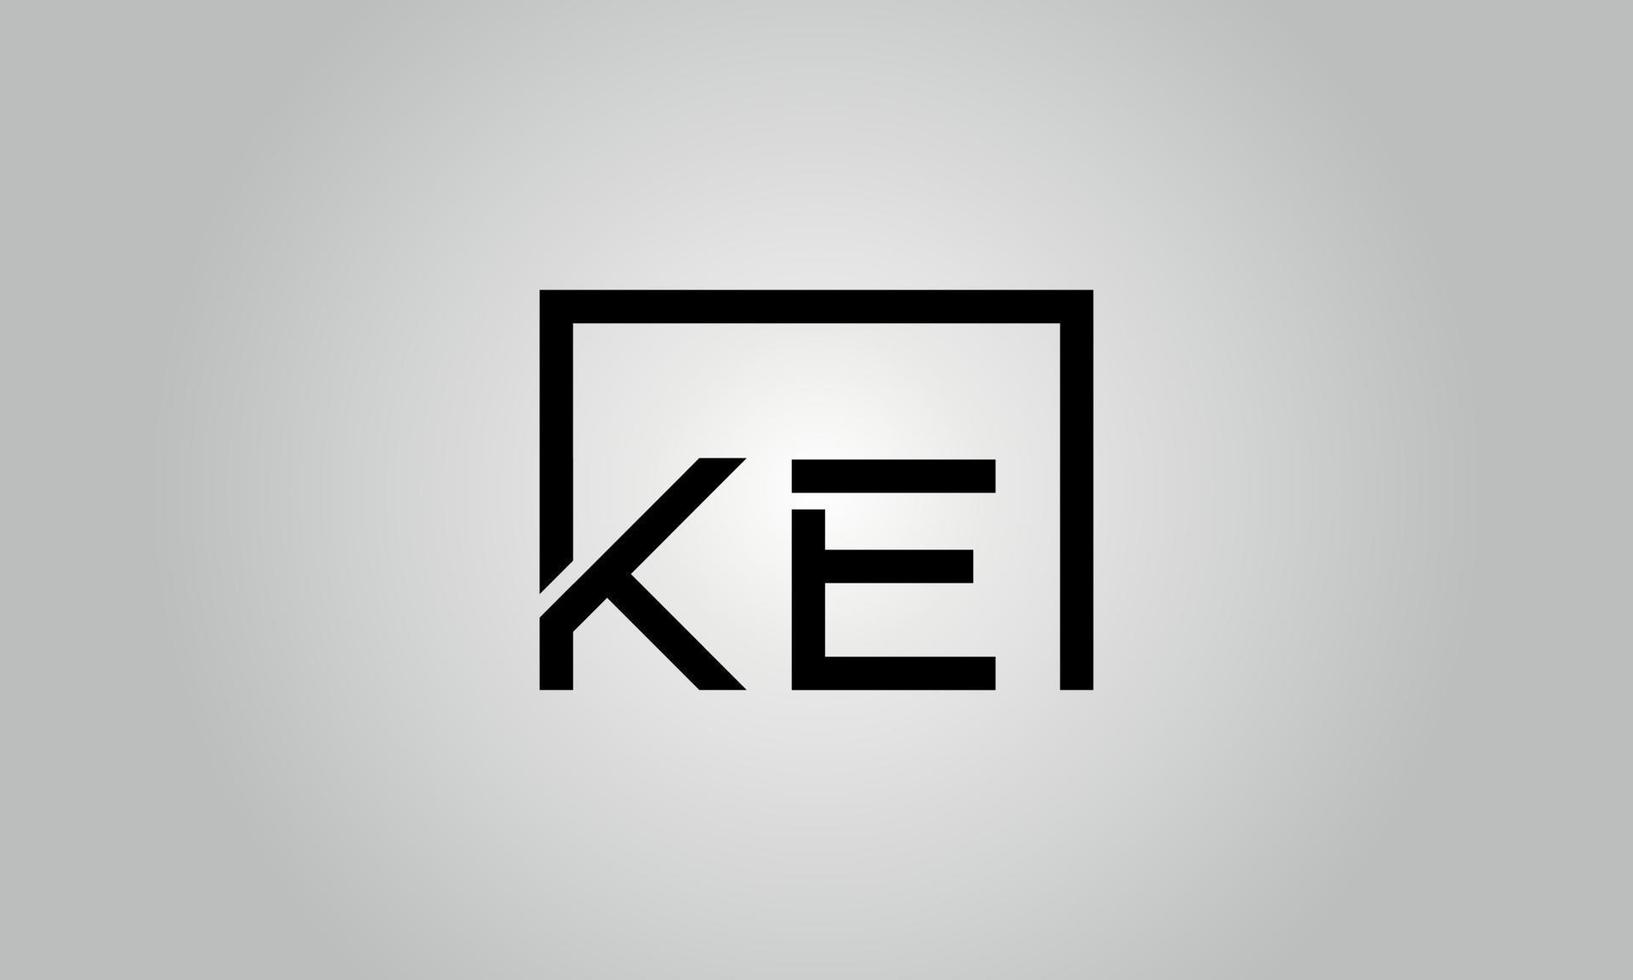 design de logotipo letra ke. ke logotipo com forma quadrada em cores pretas modelo de vetor livre.